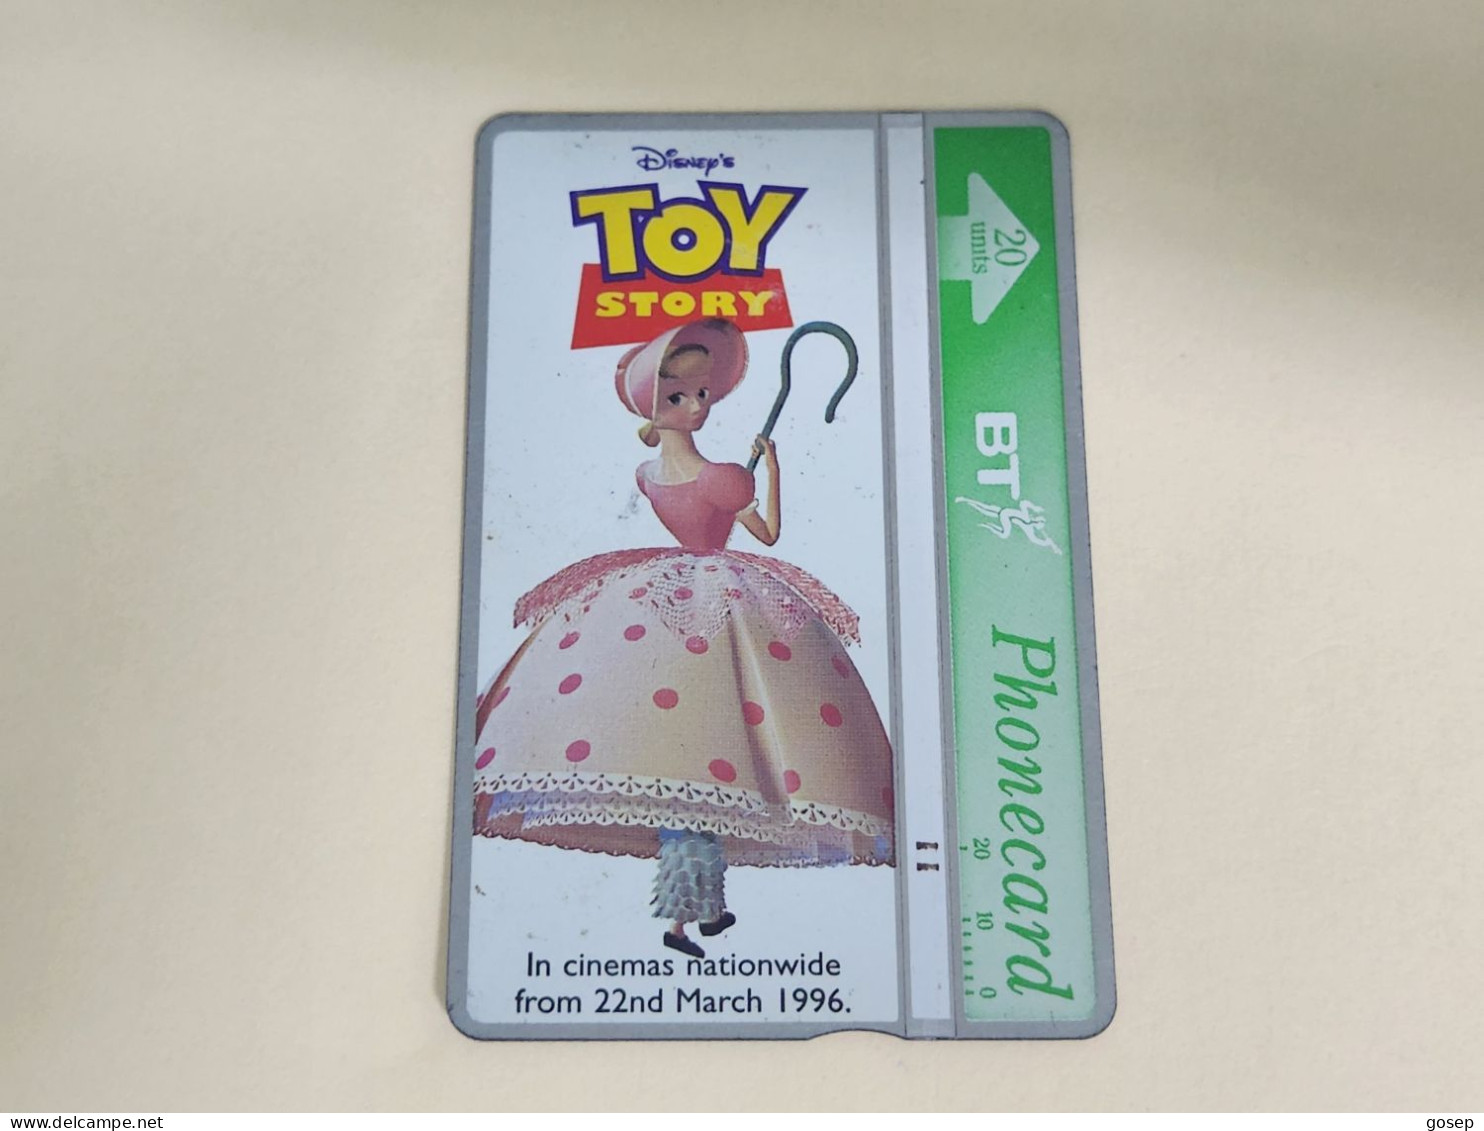 United Kingdom-(BTA152)Disney's Toy-5 BO-BEEP-(261)(20units)(642K01950)price Cataloge 3.00£ Used+1card Prepiad Free - BT Edición Publicitaria